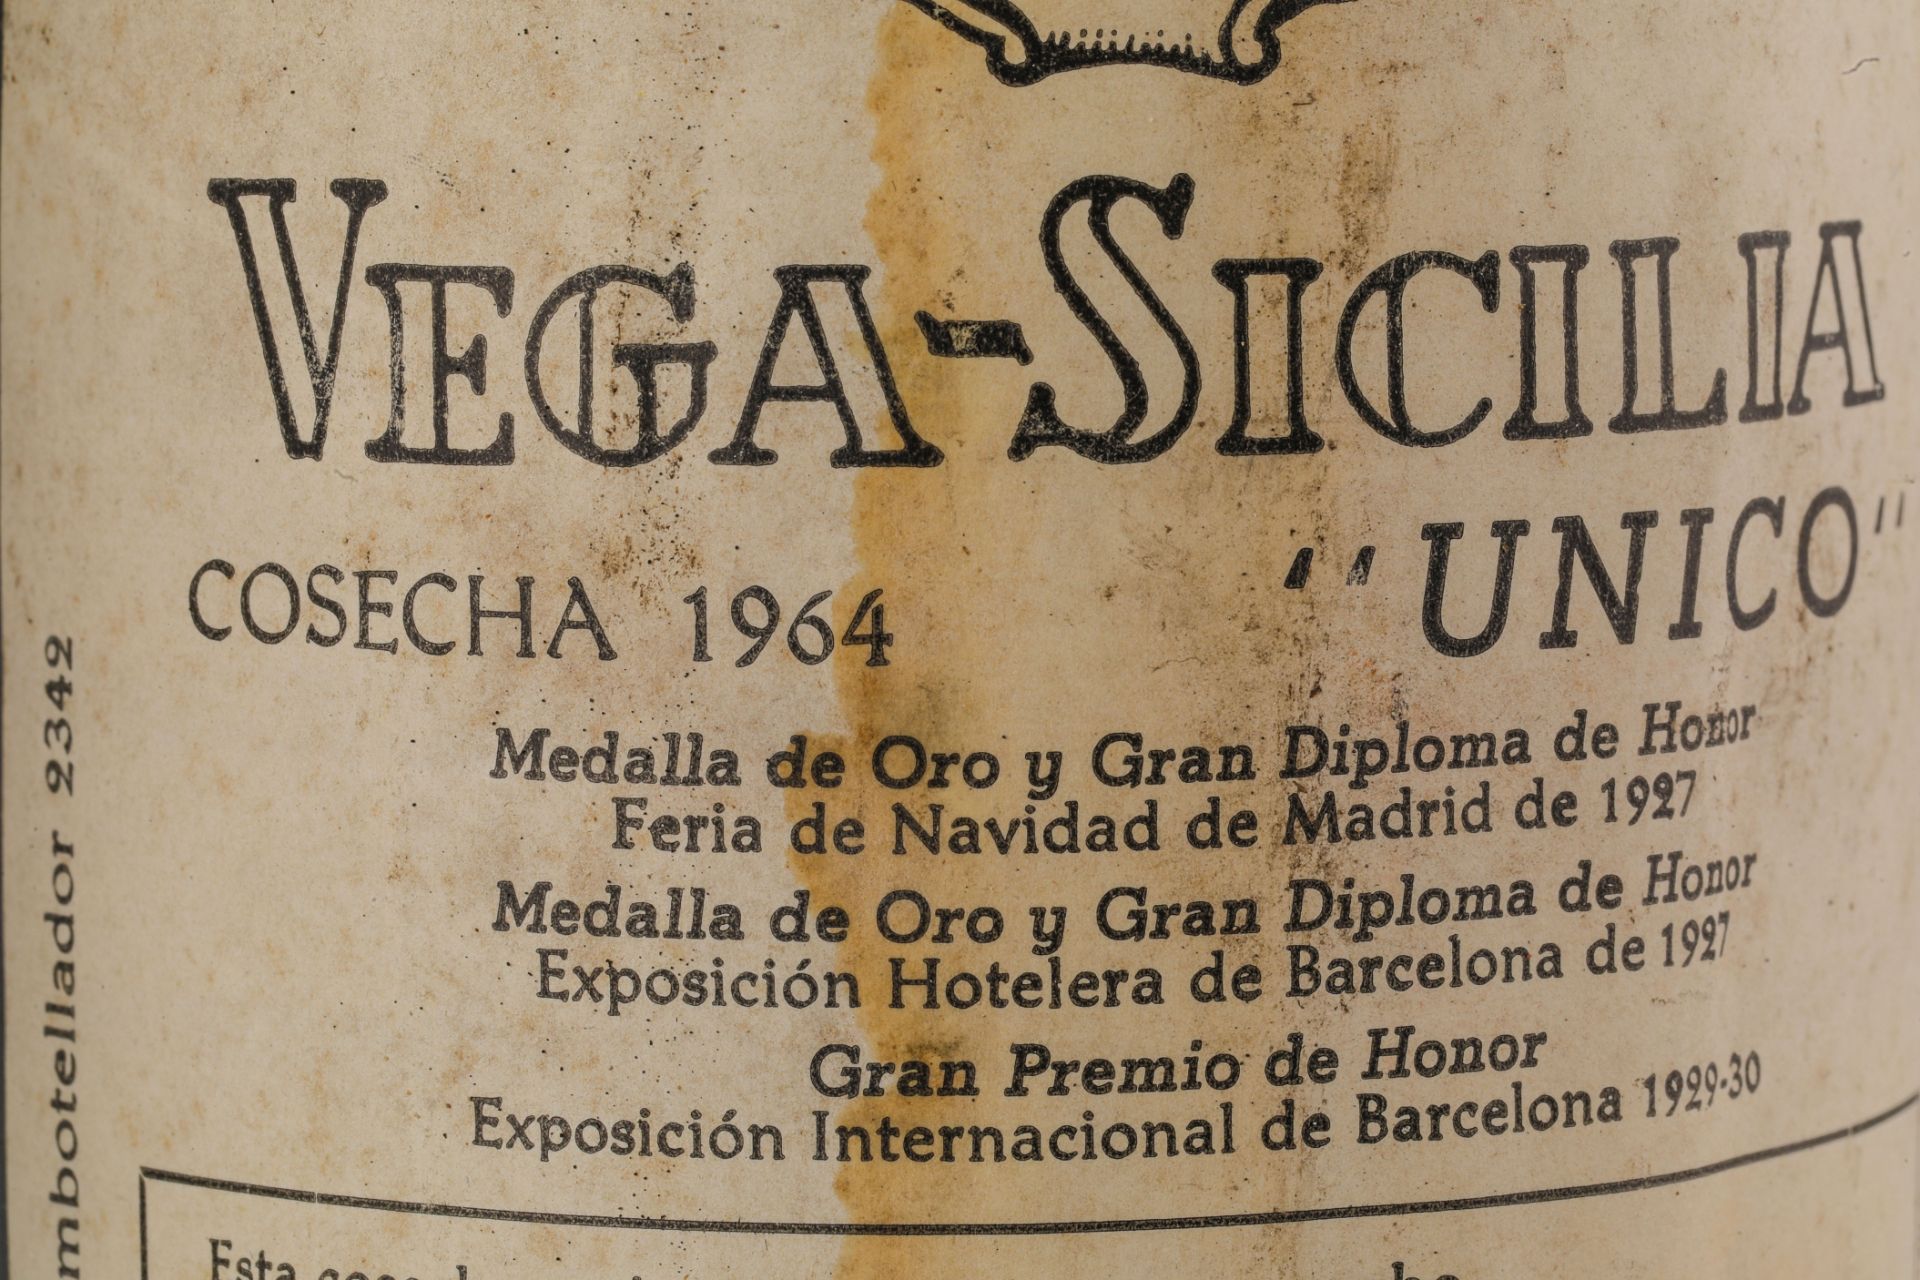 VEGA SICILIA UNICO. 1964. 2 Bouteilles N° 09928 et N°46411 sur production de 96 000 bouteilles. - Image 5 of 9